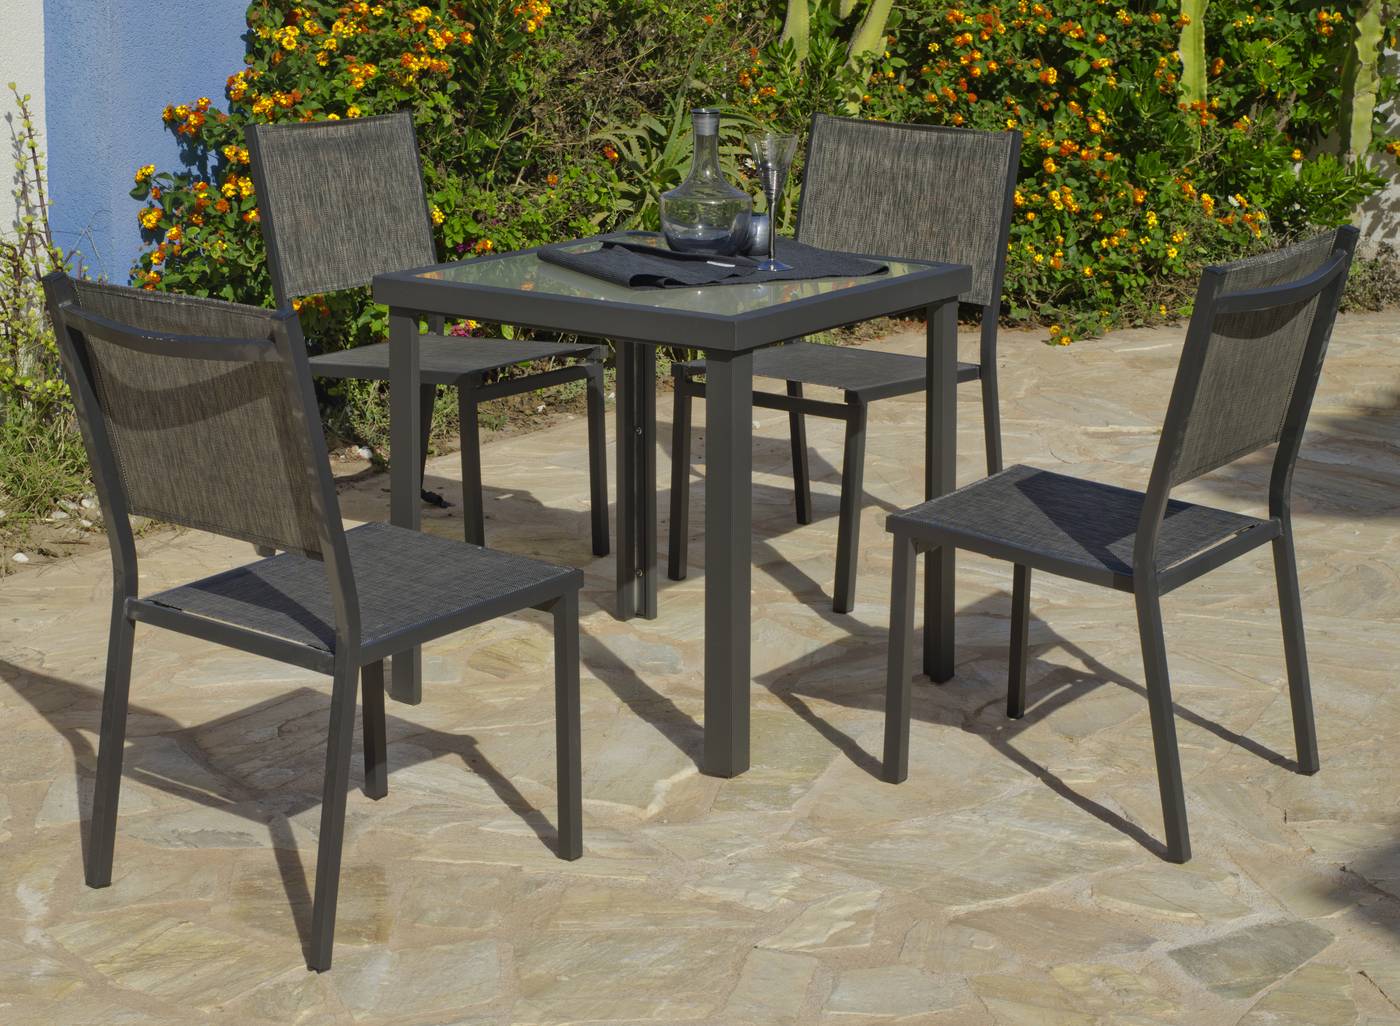 Conjunto de aluminio color antracita: mesa cuadrada de 70 cm. + 4 sillas de aluminio y textilen